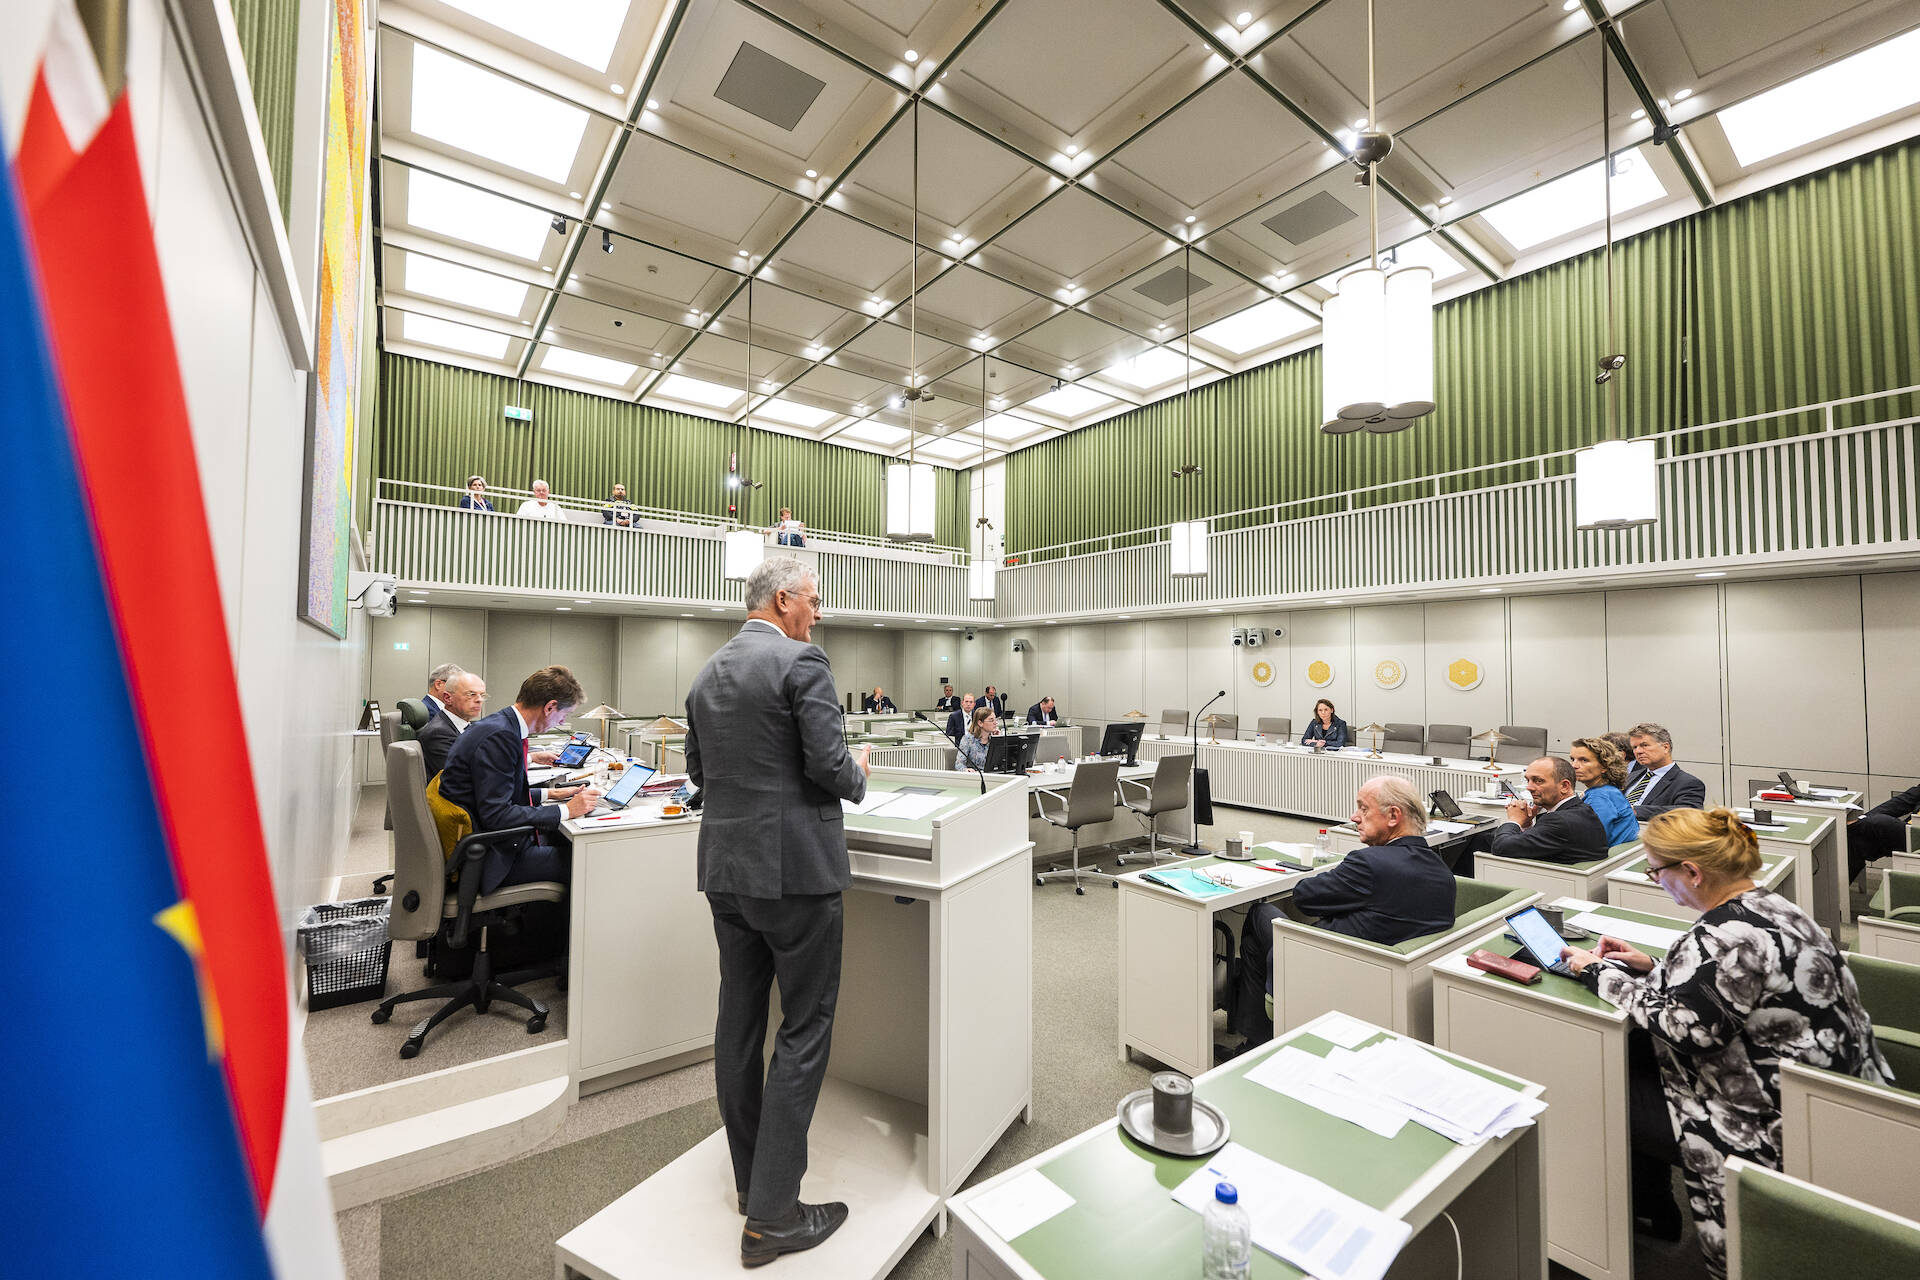 De Kamer tijdens het debat op 11 oktober 2022